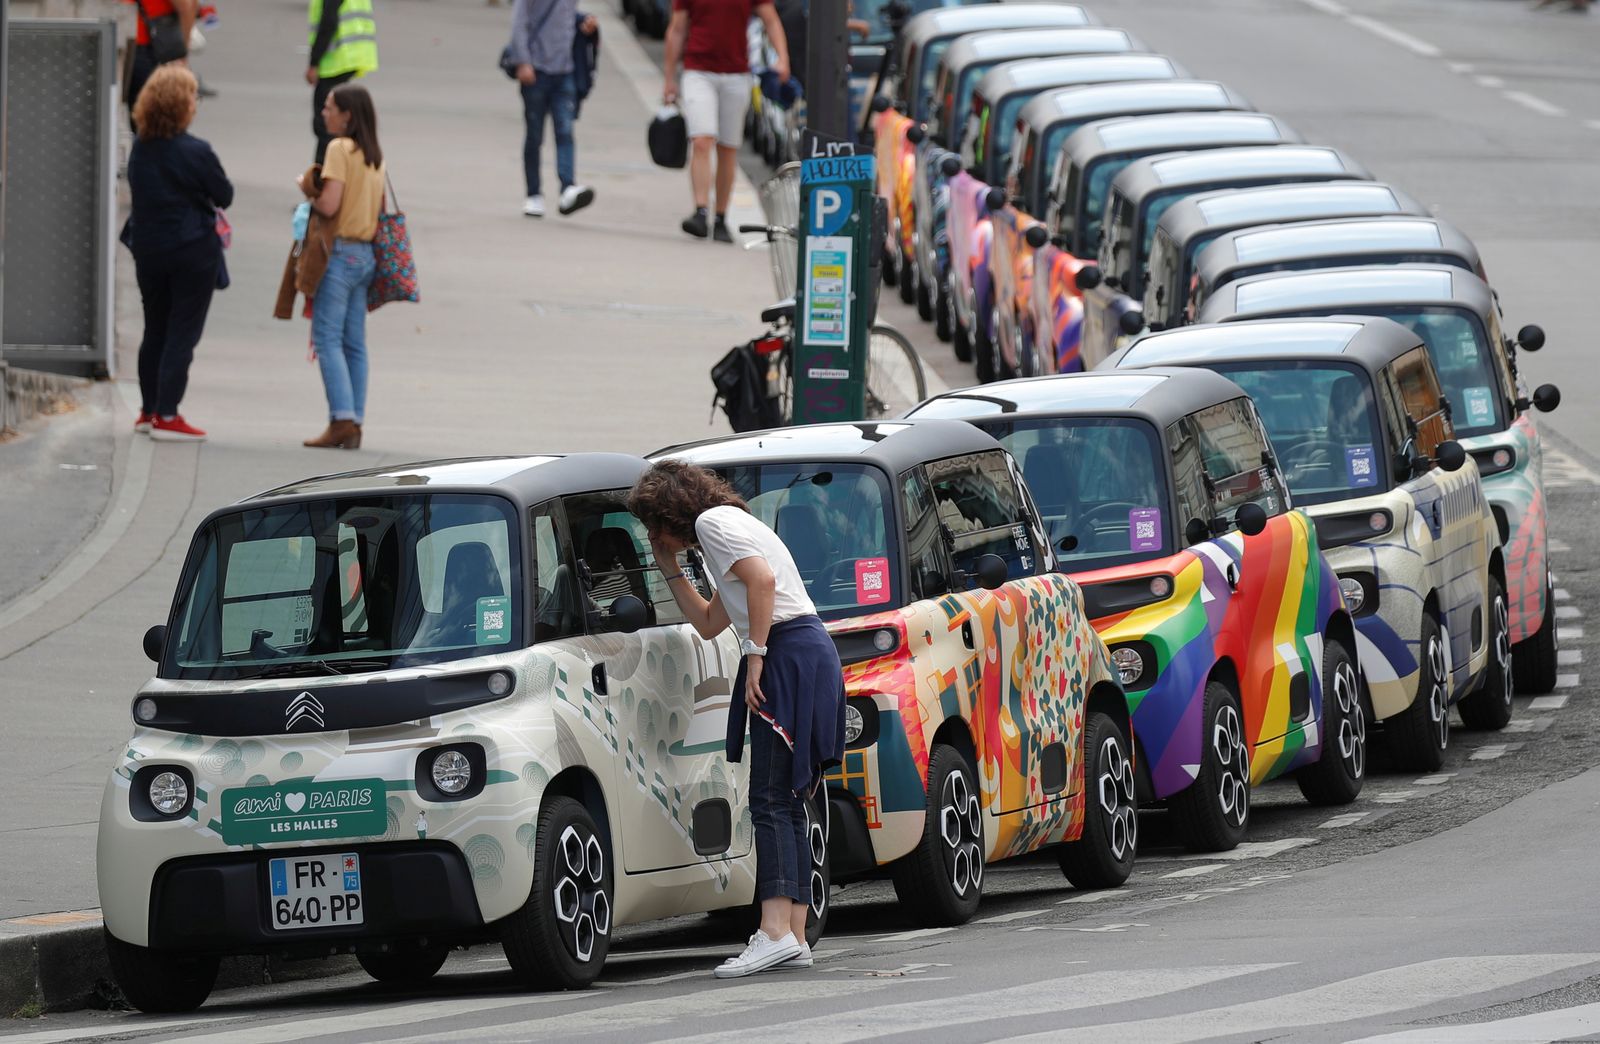 عرض لسيارات كهربائية، ذات ألوان زاهية، في مدينة باريس. - REUTERS